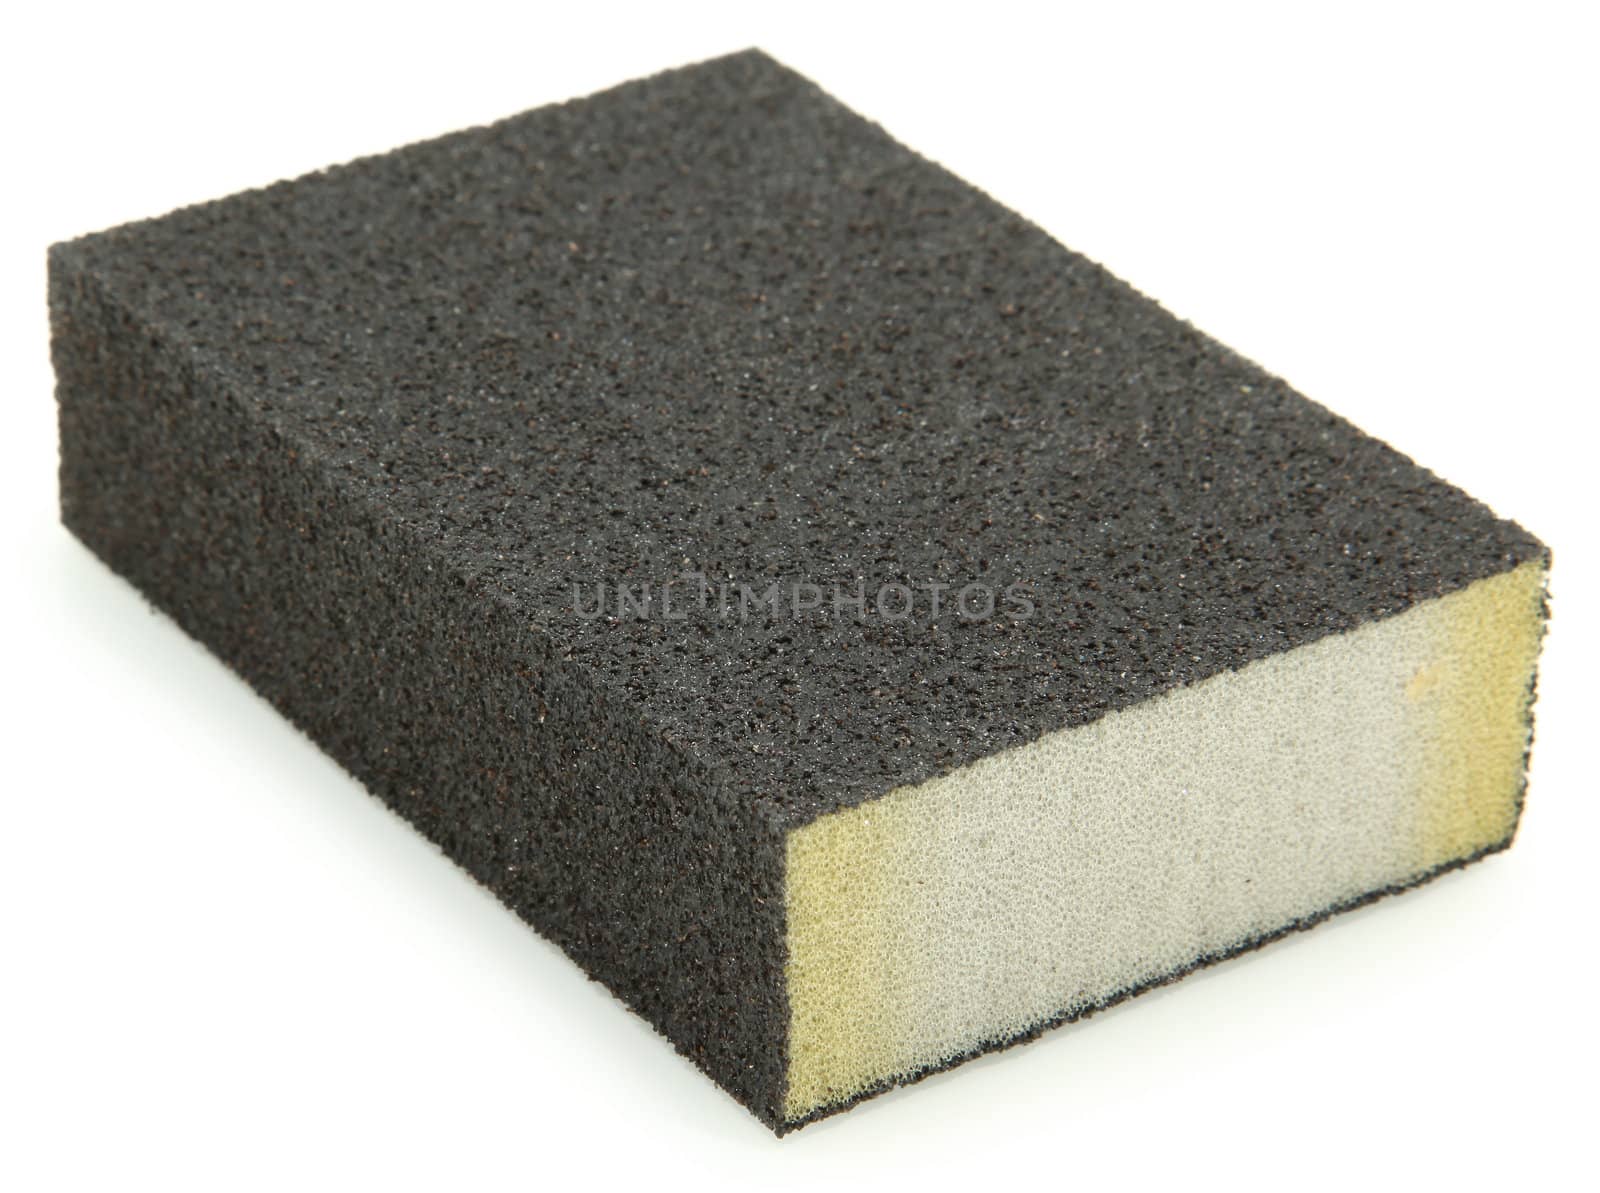 Isolated sanding block sponge over white background.